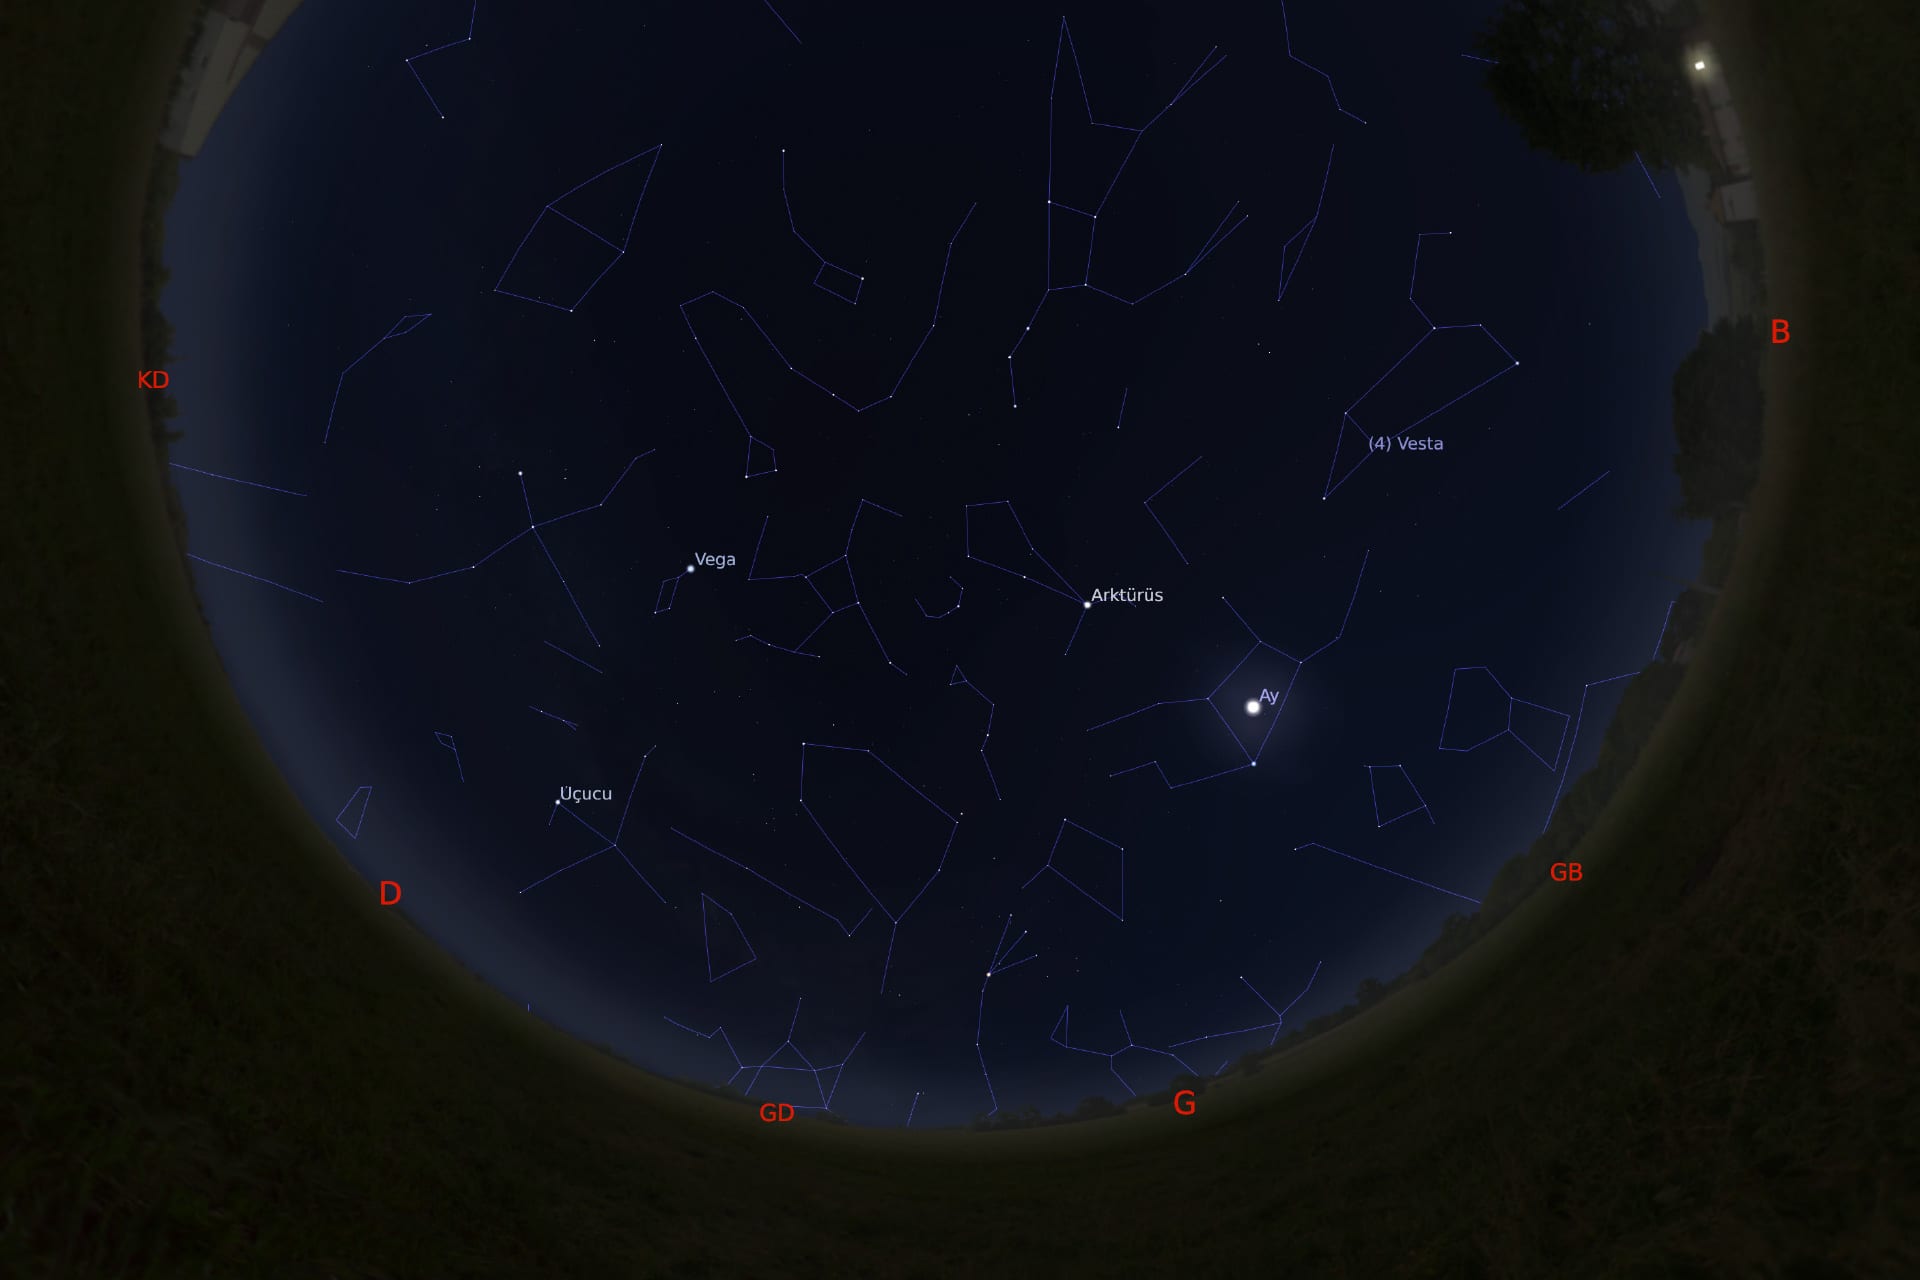 1 Mart 2021 - saat 05:30'daki gökyüzü görüntüsü